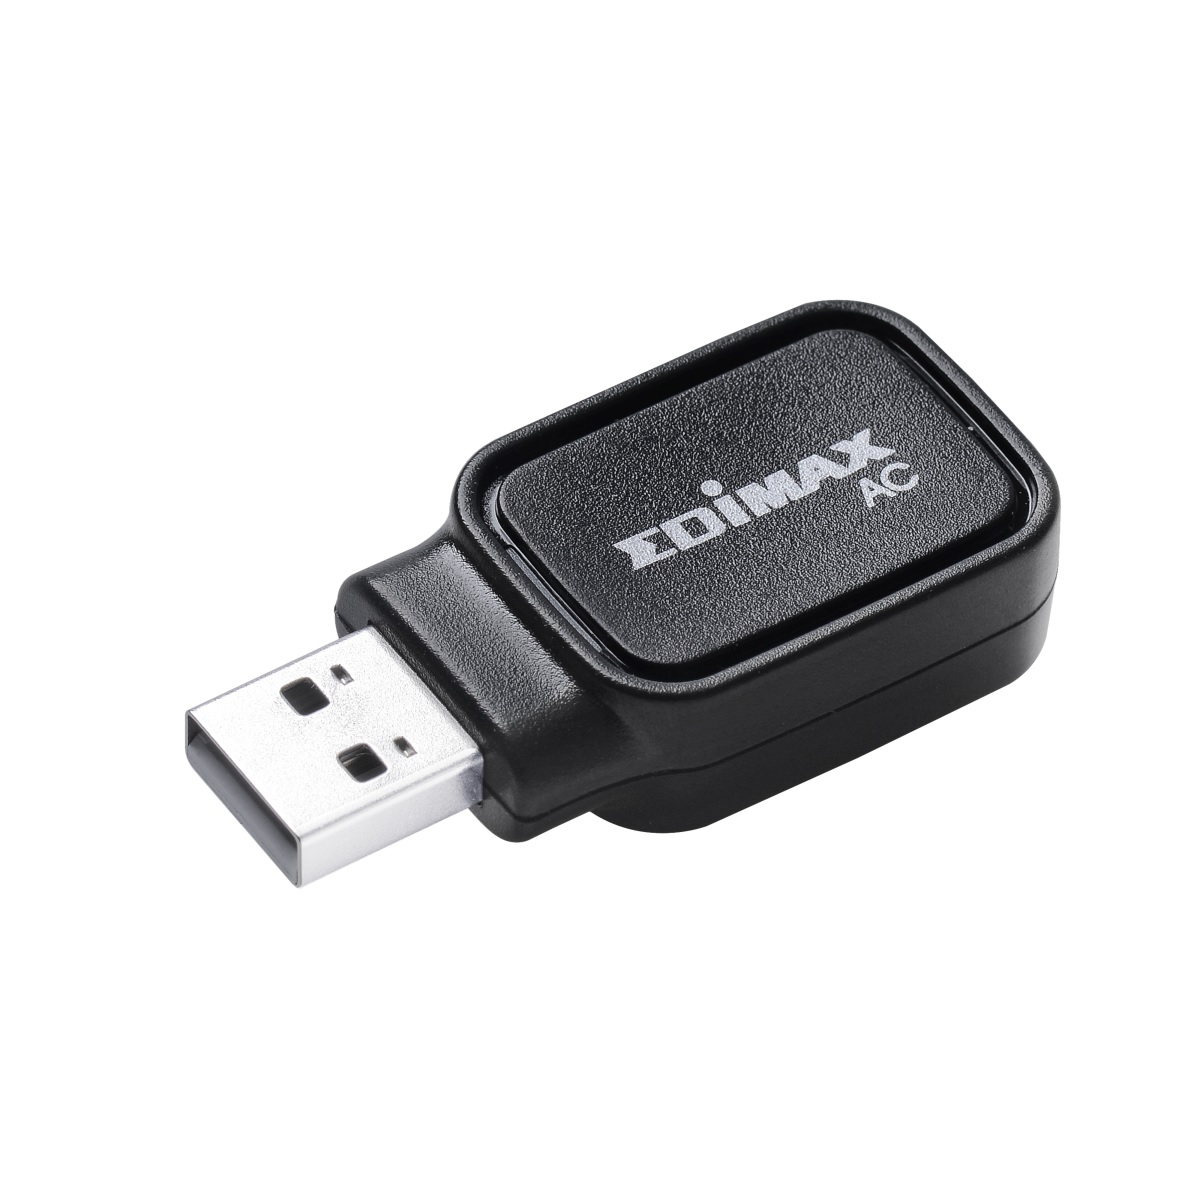 AC600 Dual-Band & Bluetooth 4.0 USB EDIMAX